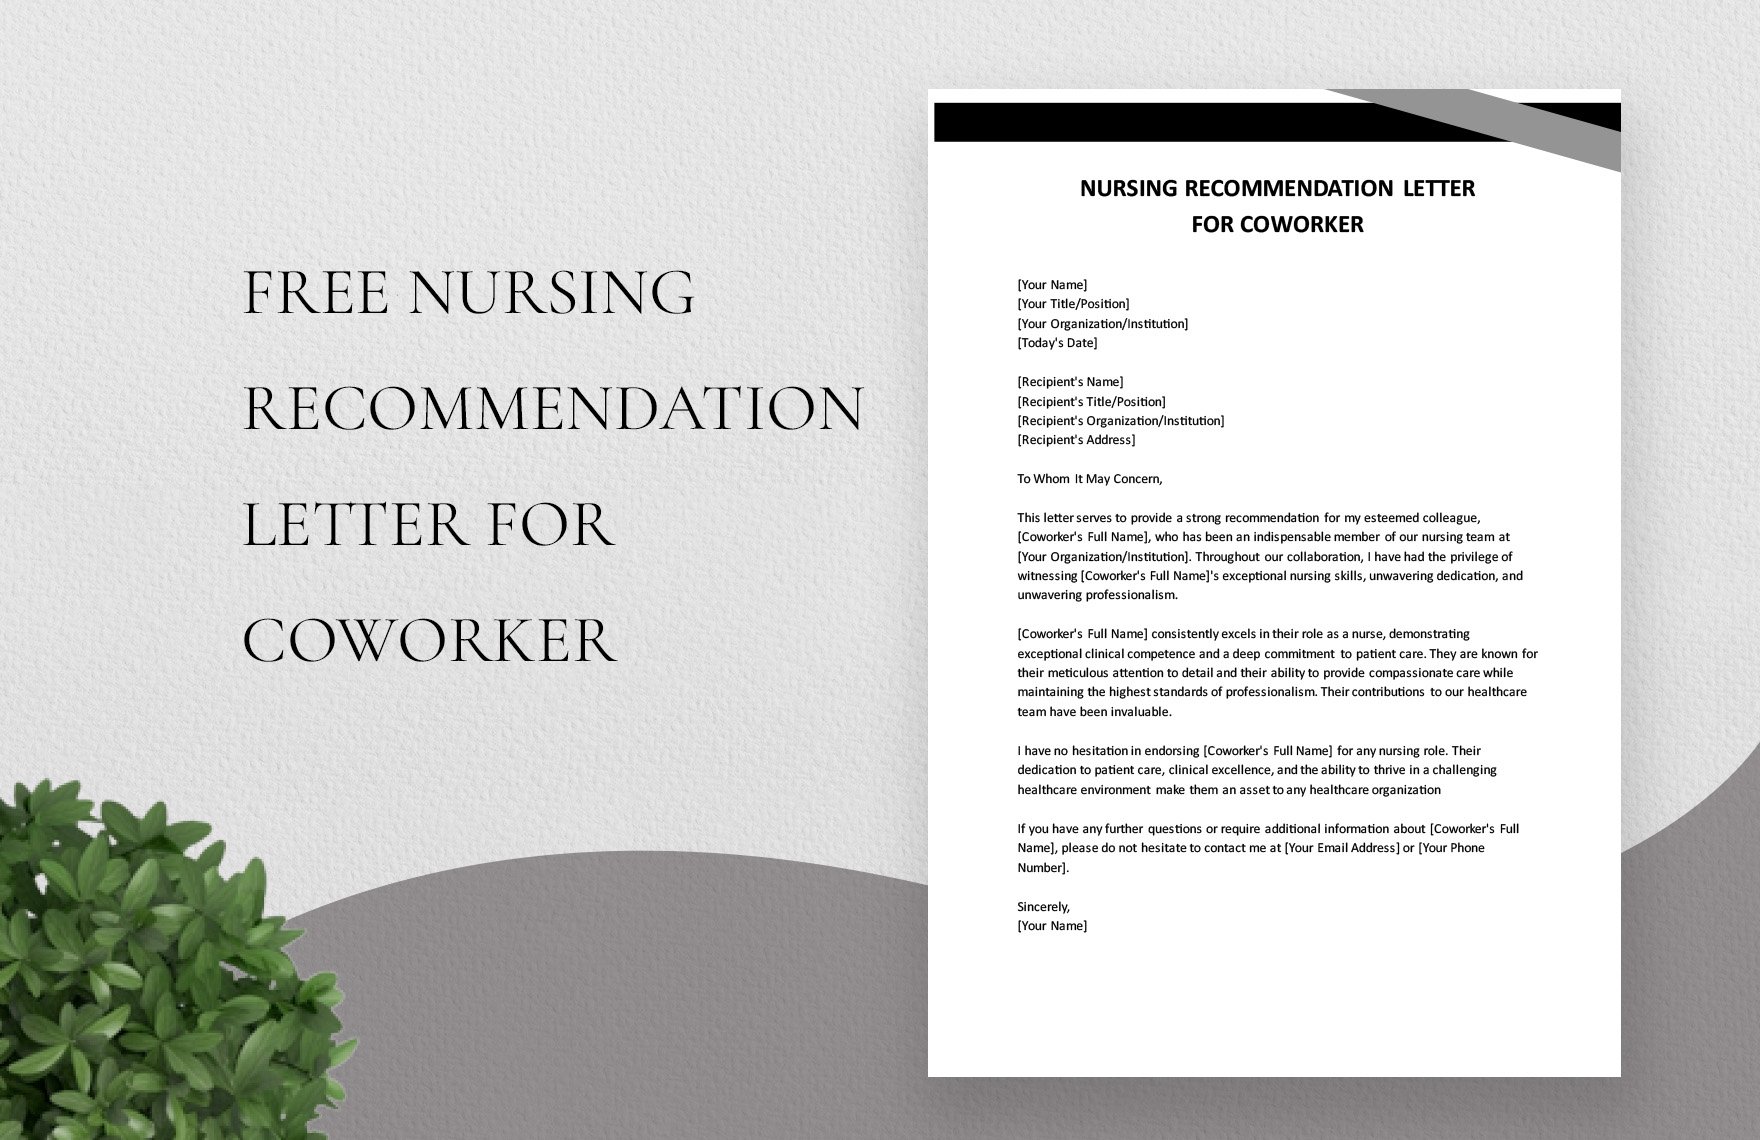 Nursing Recommendation Letter For Coworker